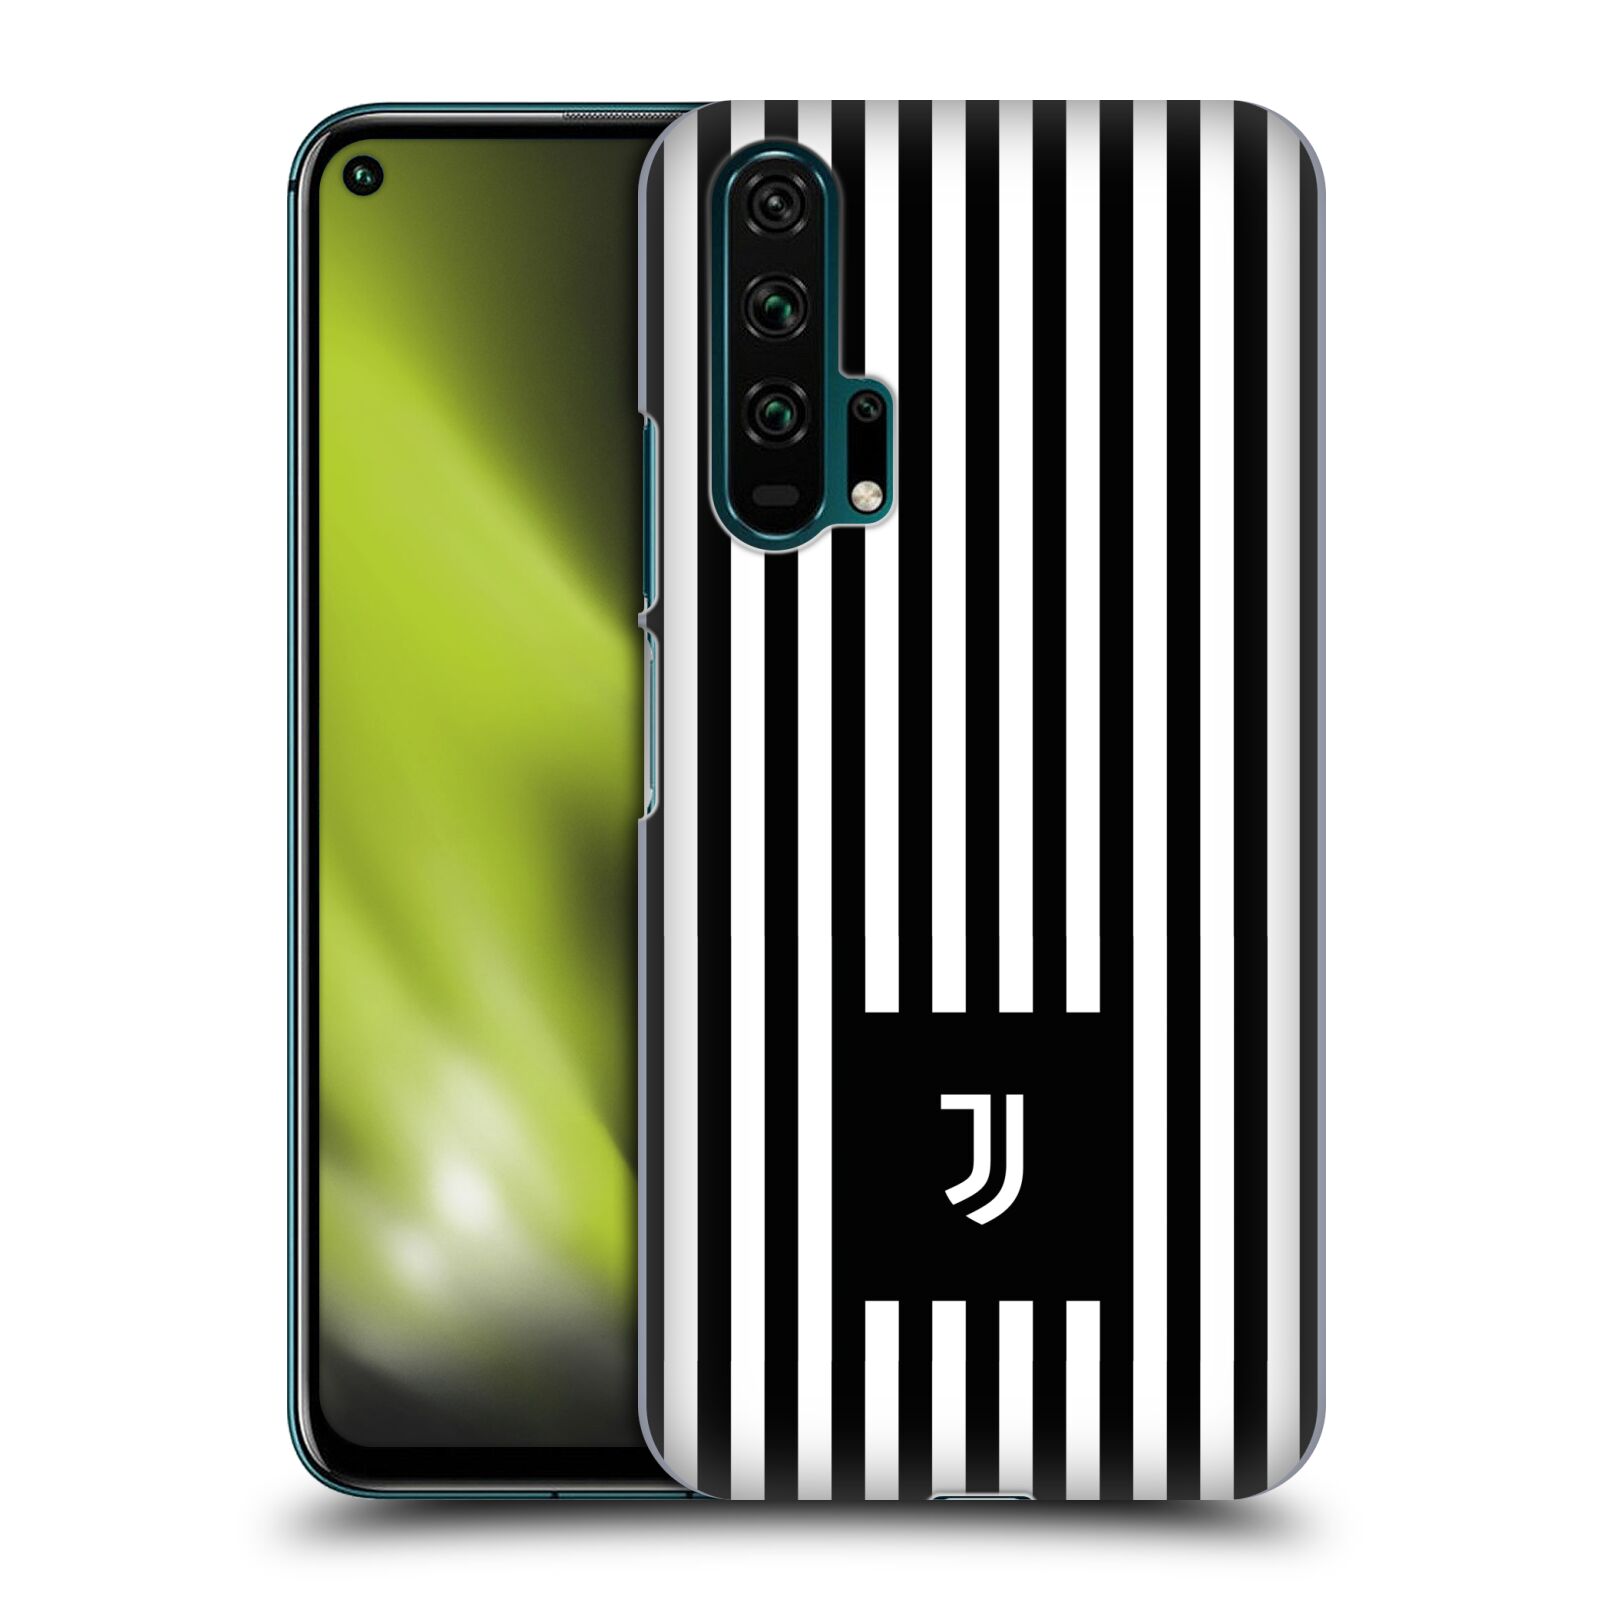 Pouzdro na mobil Honor 20 PRO - HEAD CASE - Fotbalový klub Juventus FC černobílé pruhy znak